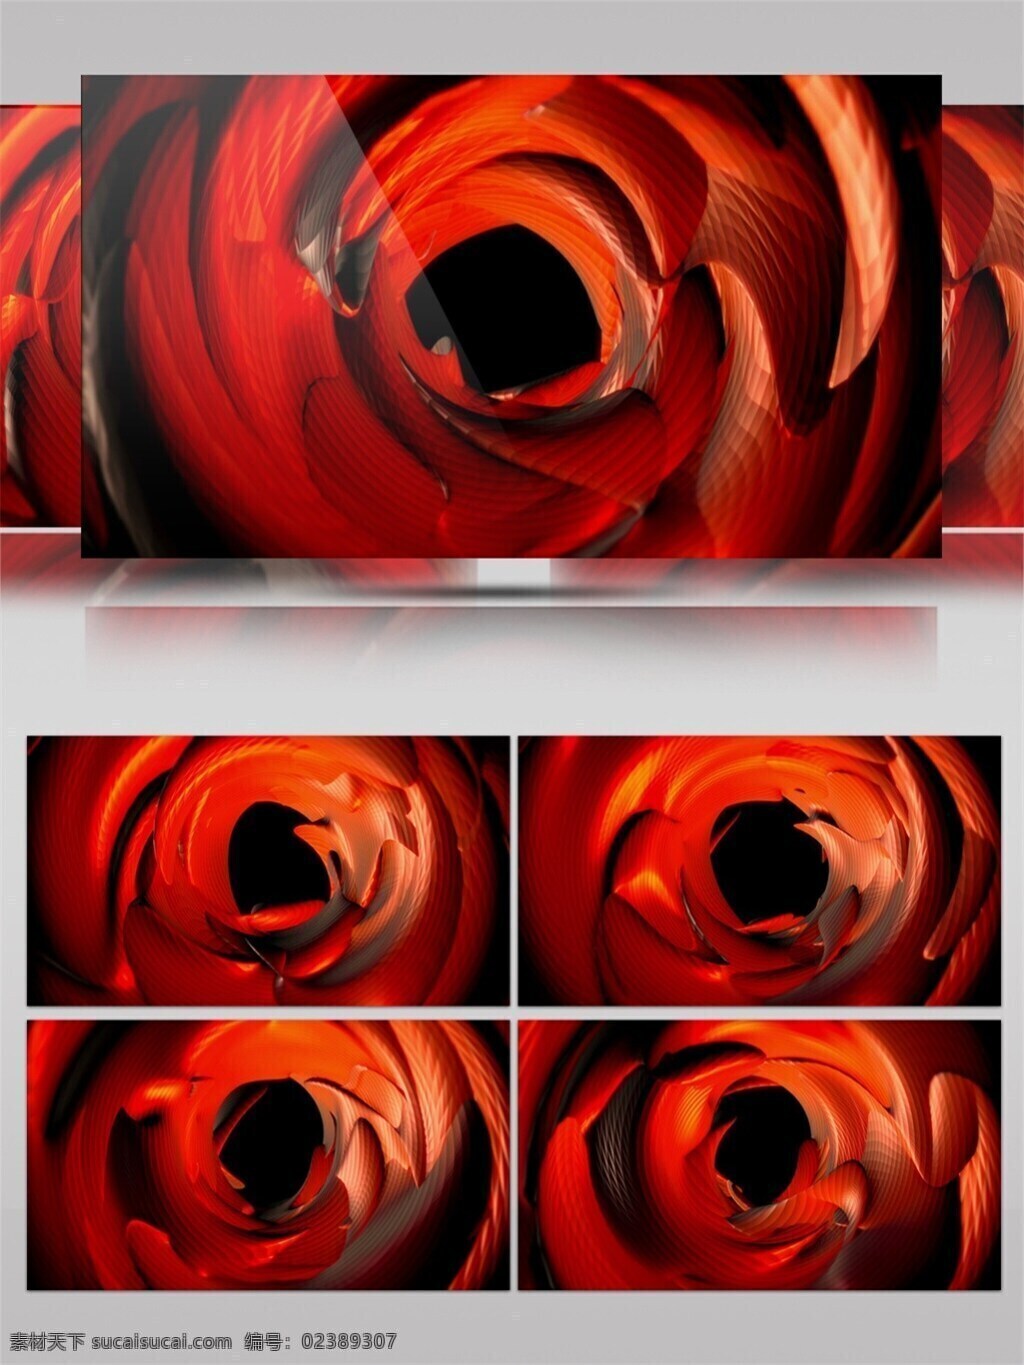 浪漫红色 玫瑰花开 特效视频素材 唯美炫光 红色 玫瑰 动态 视频 旋涡红色光 生活 实用 背景